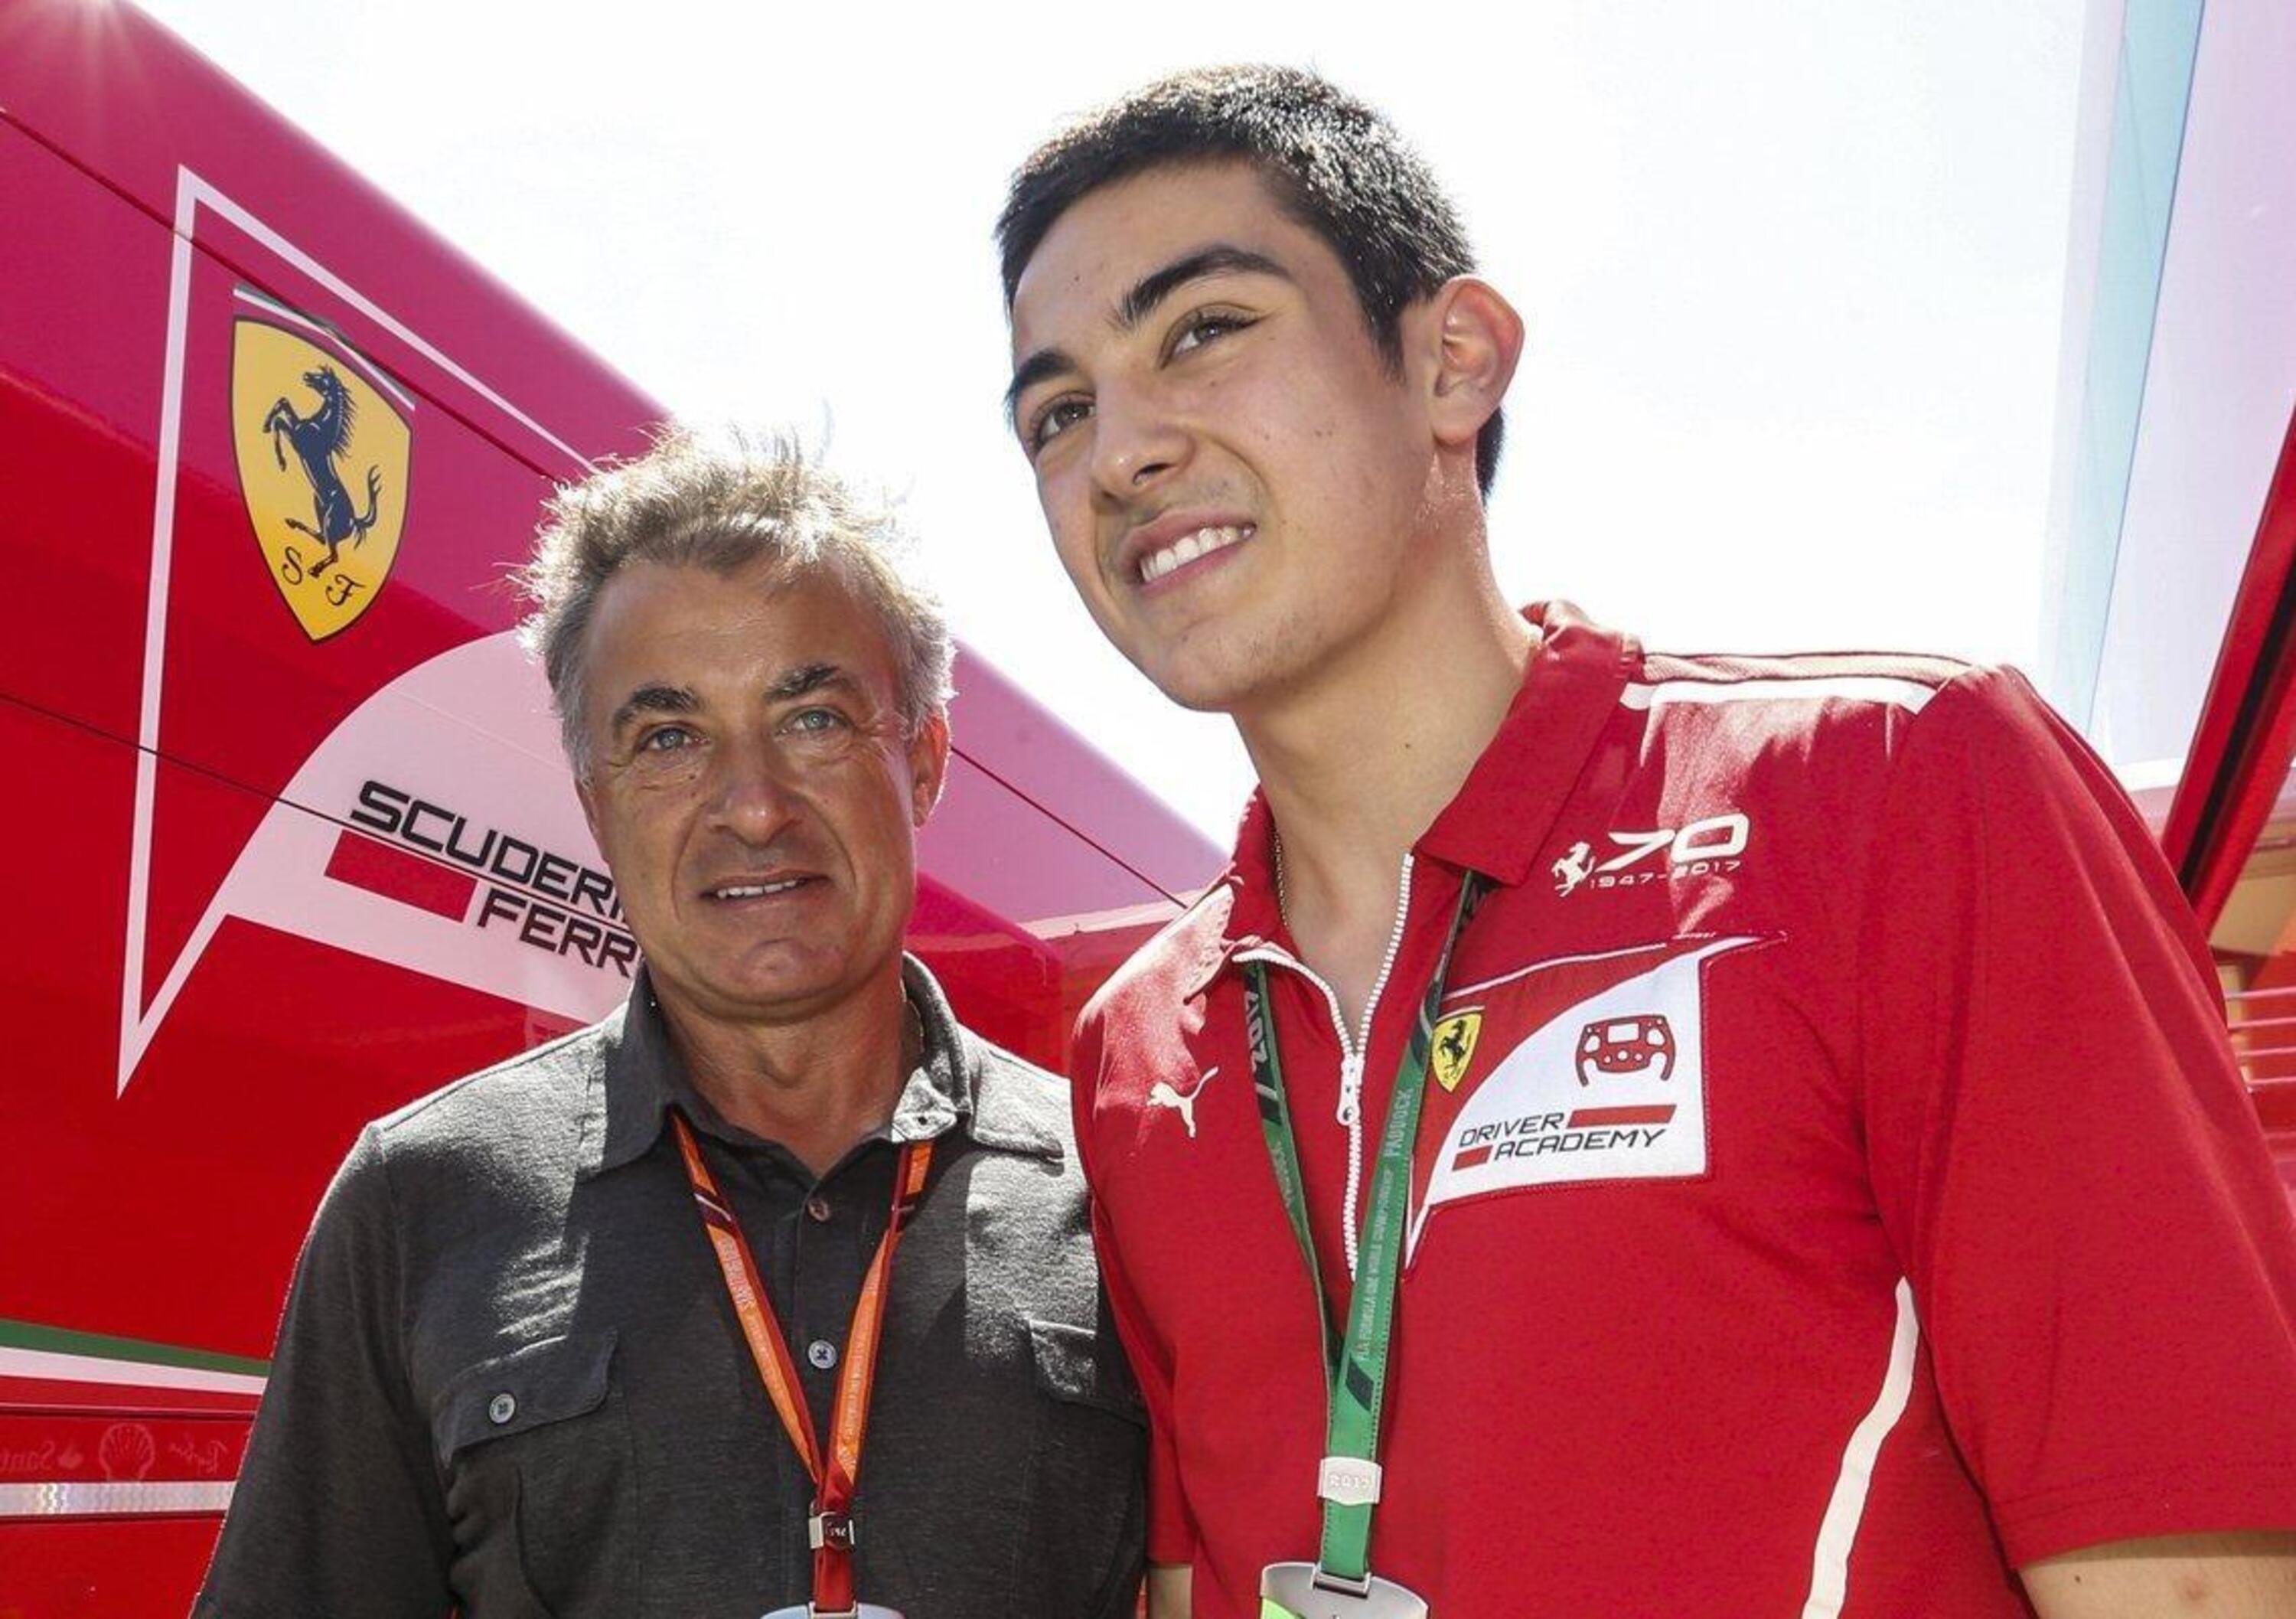 Alesi vende la sua Ferrari F40 per sostenere la carriera del figlio in Formula 2